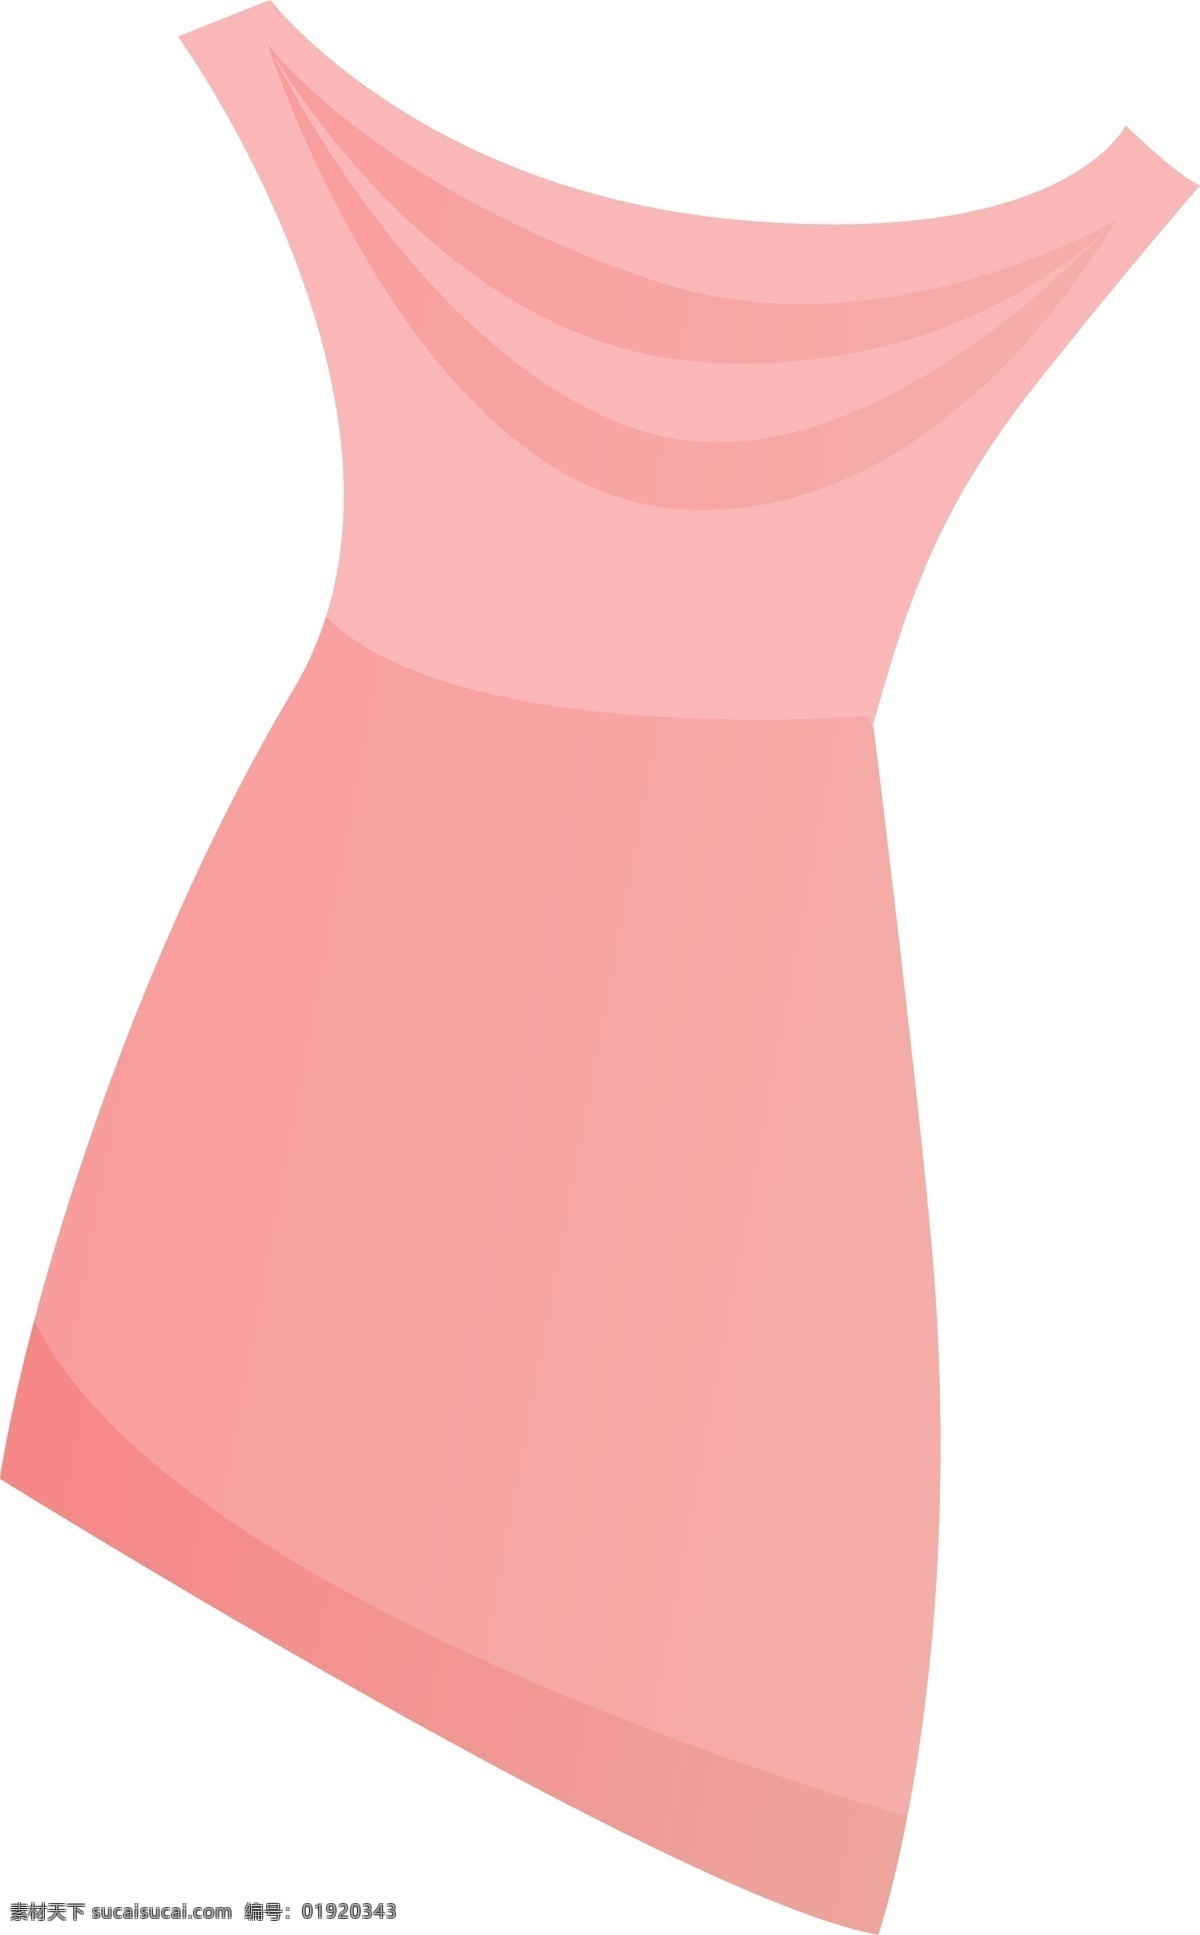 粉色 礼 裙 卡通 粉色礼裙 卡通礼裙 手绘礼裙 礼服 裙子 女生节 三八节 妇女节 晚礼服 连衣裙